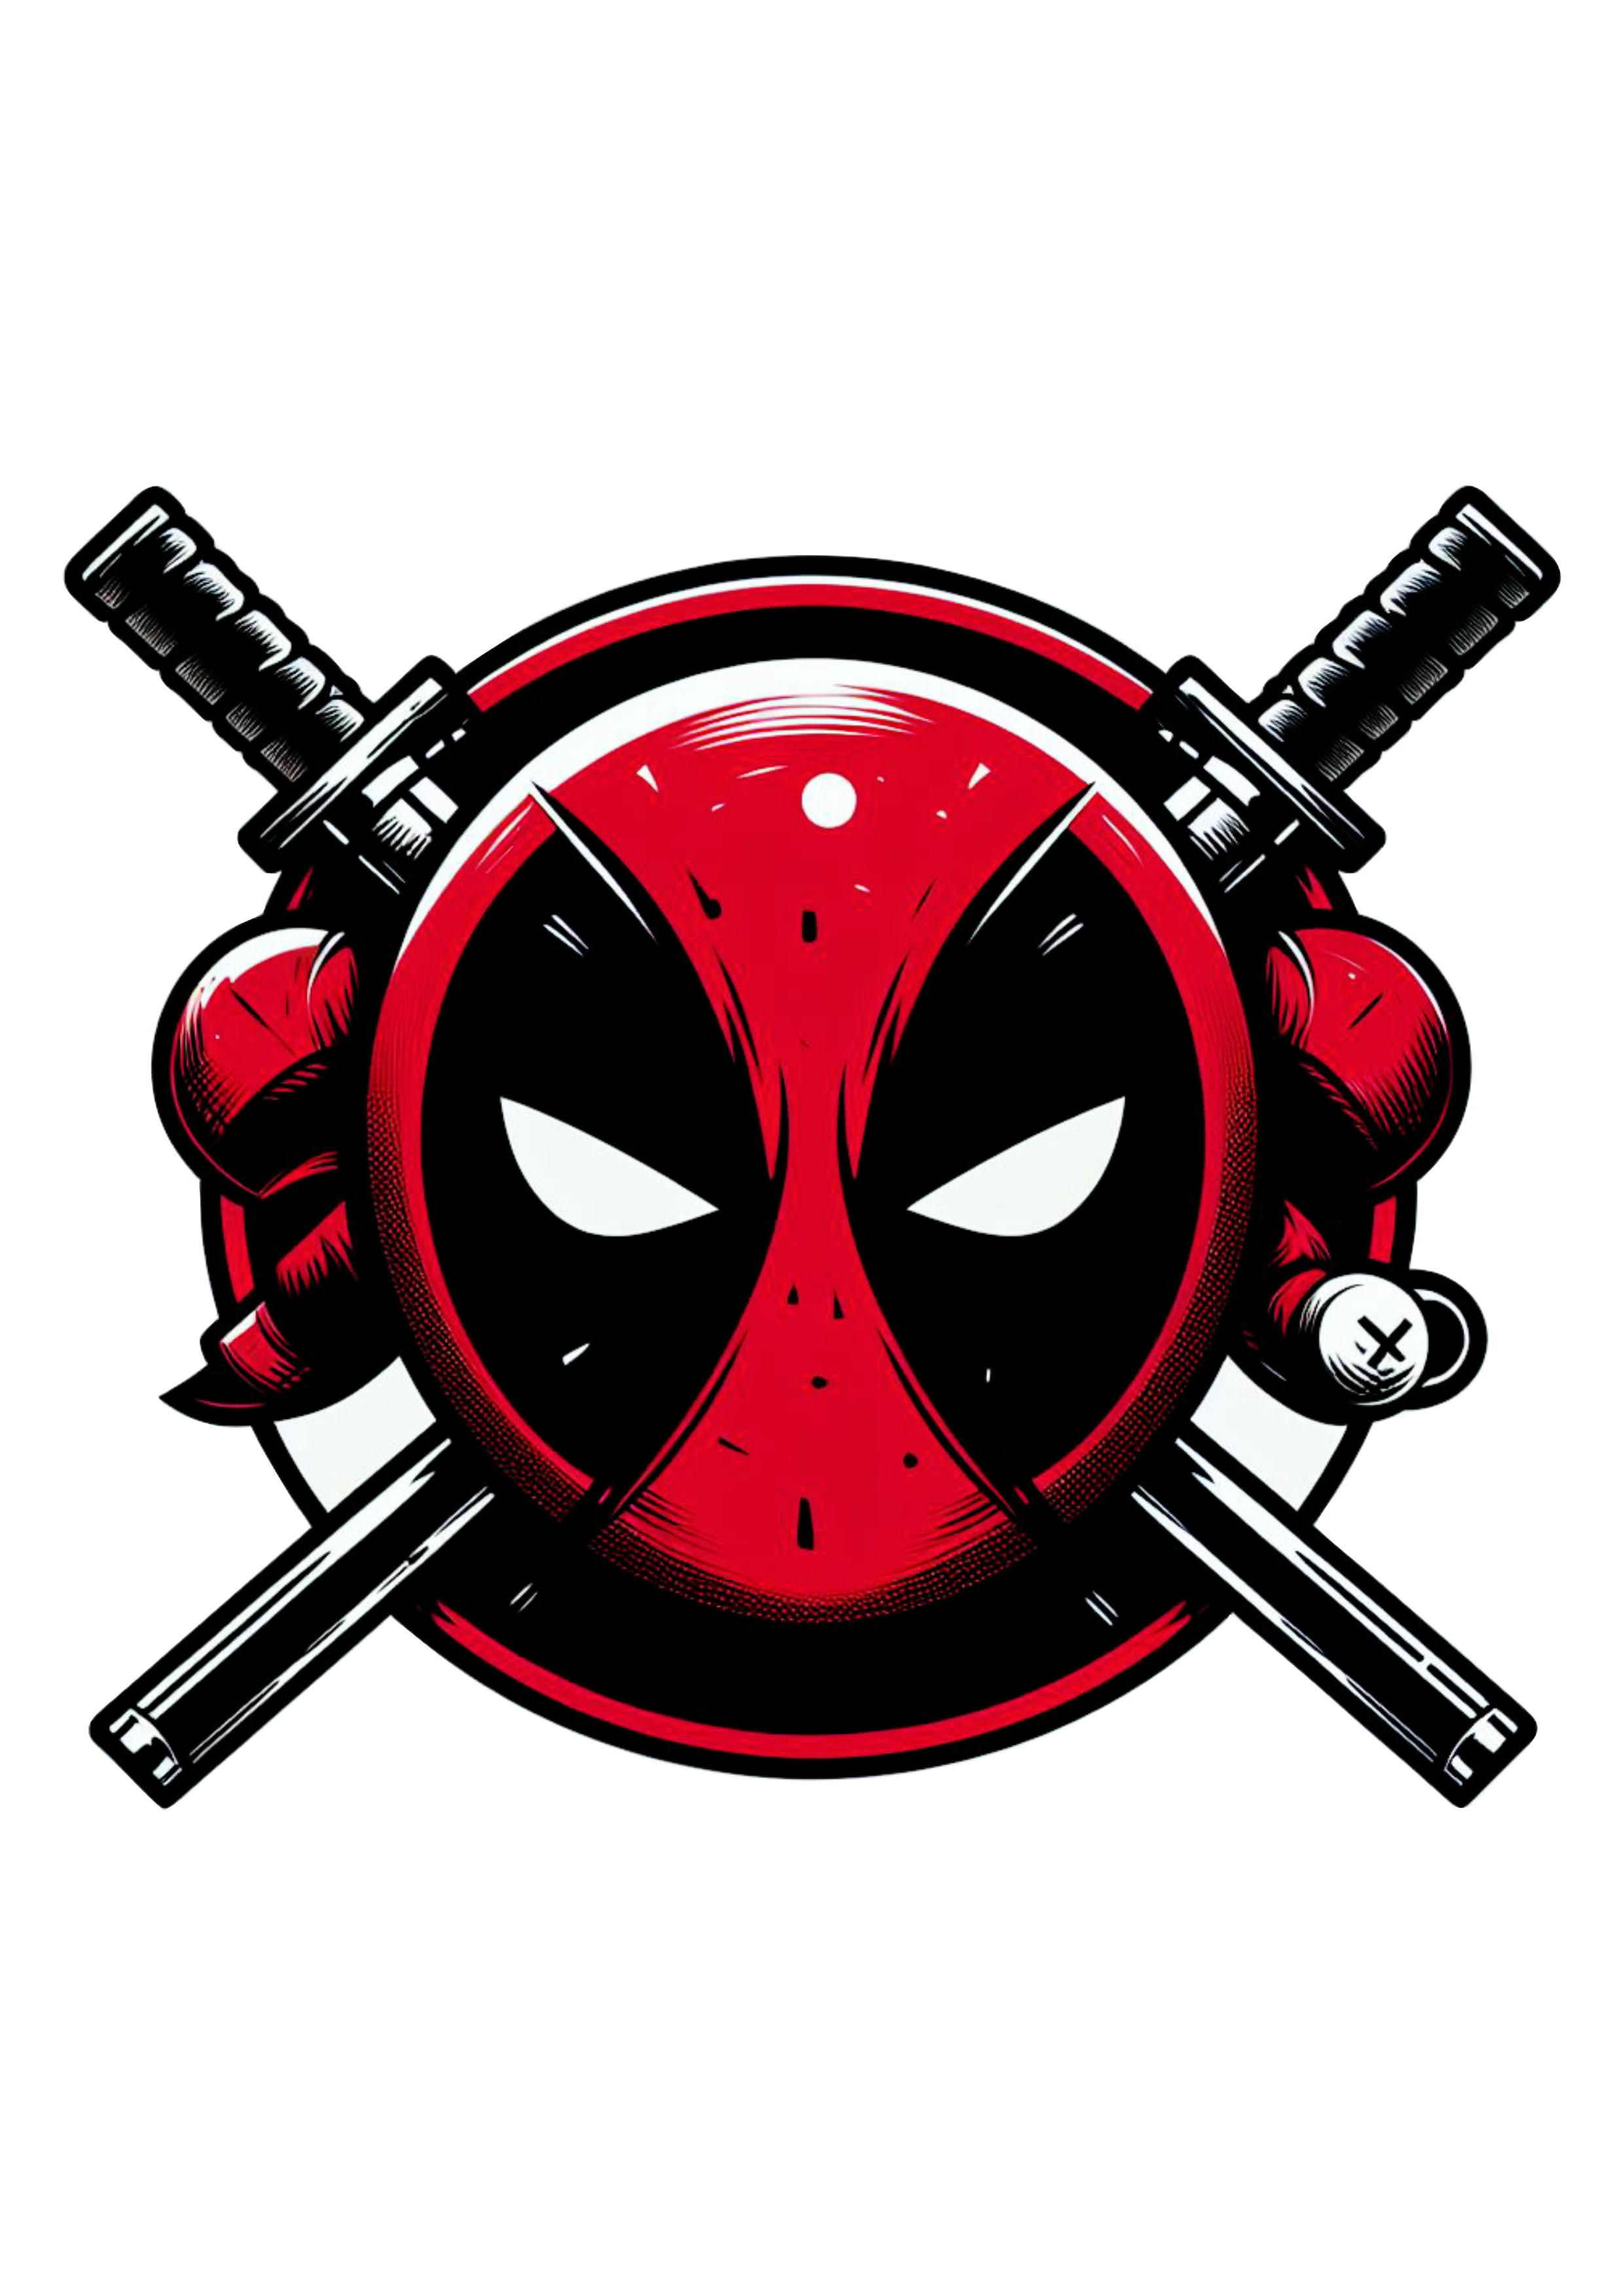 Deadpool herói Marvel desenho simples cartoon colorido cabeça logo artes visuais png